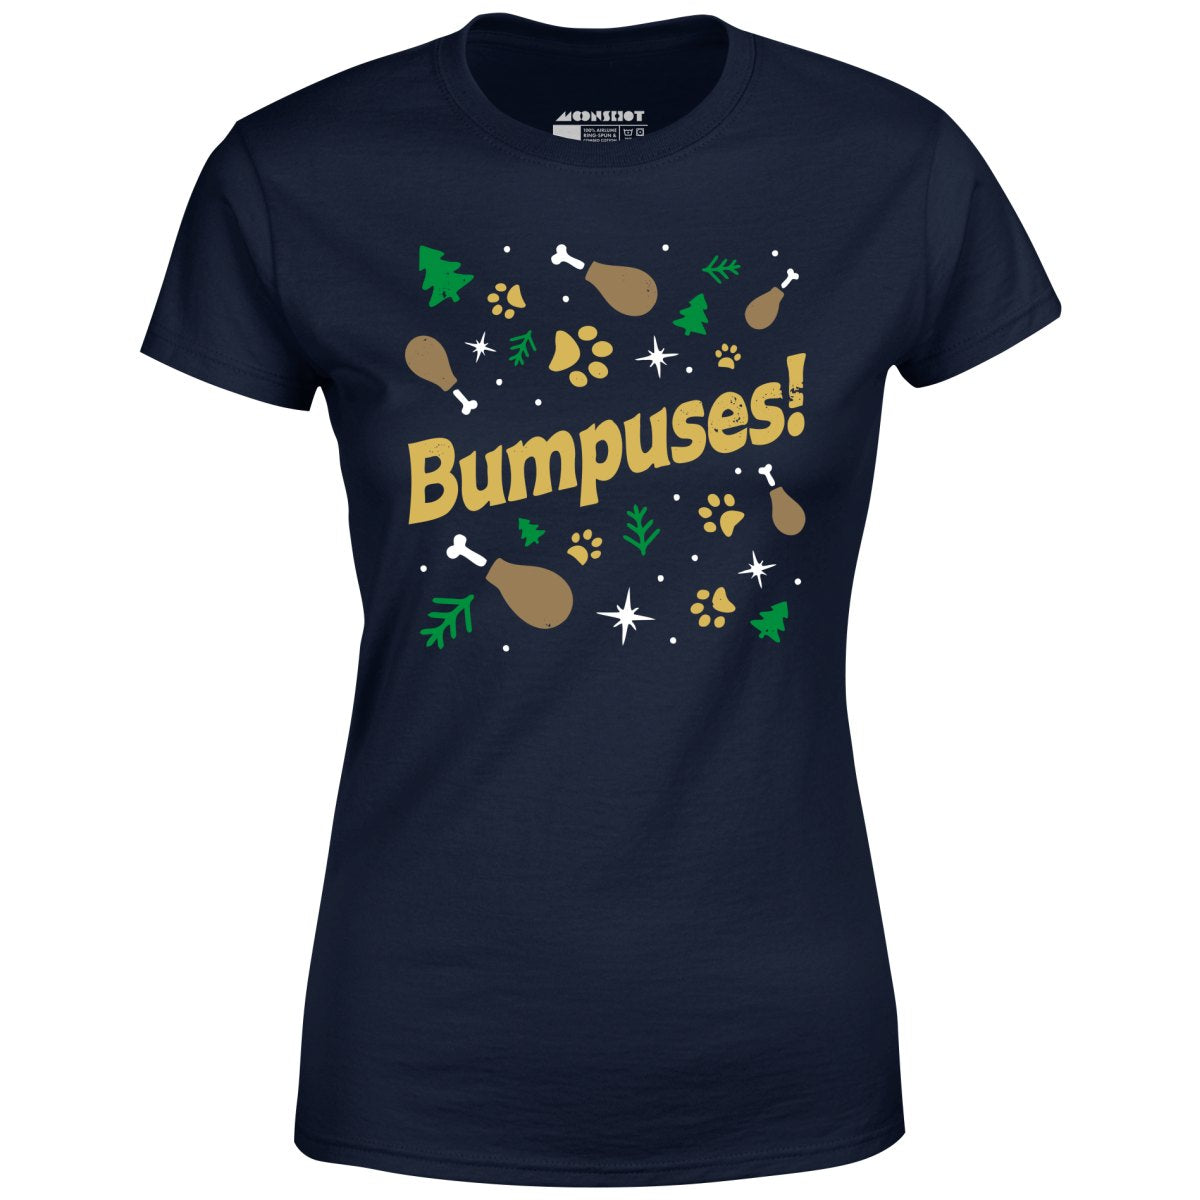 Bumpuses! - Women's T-Shirt